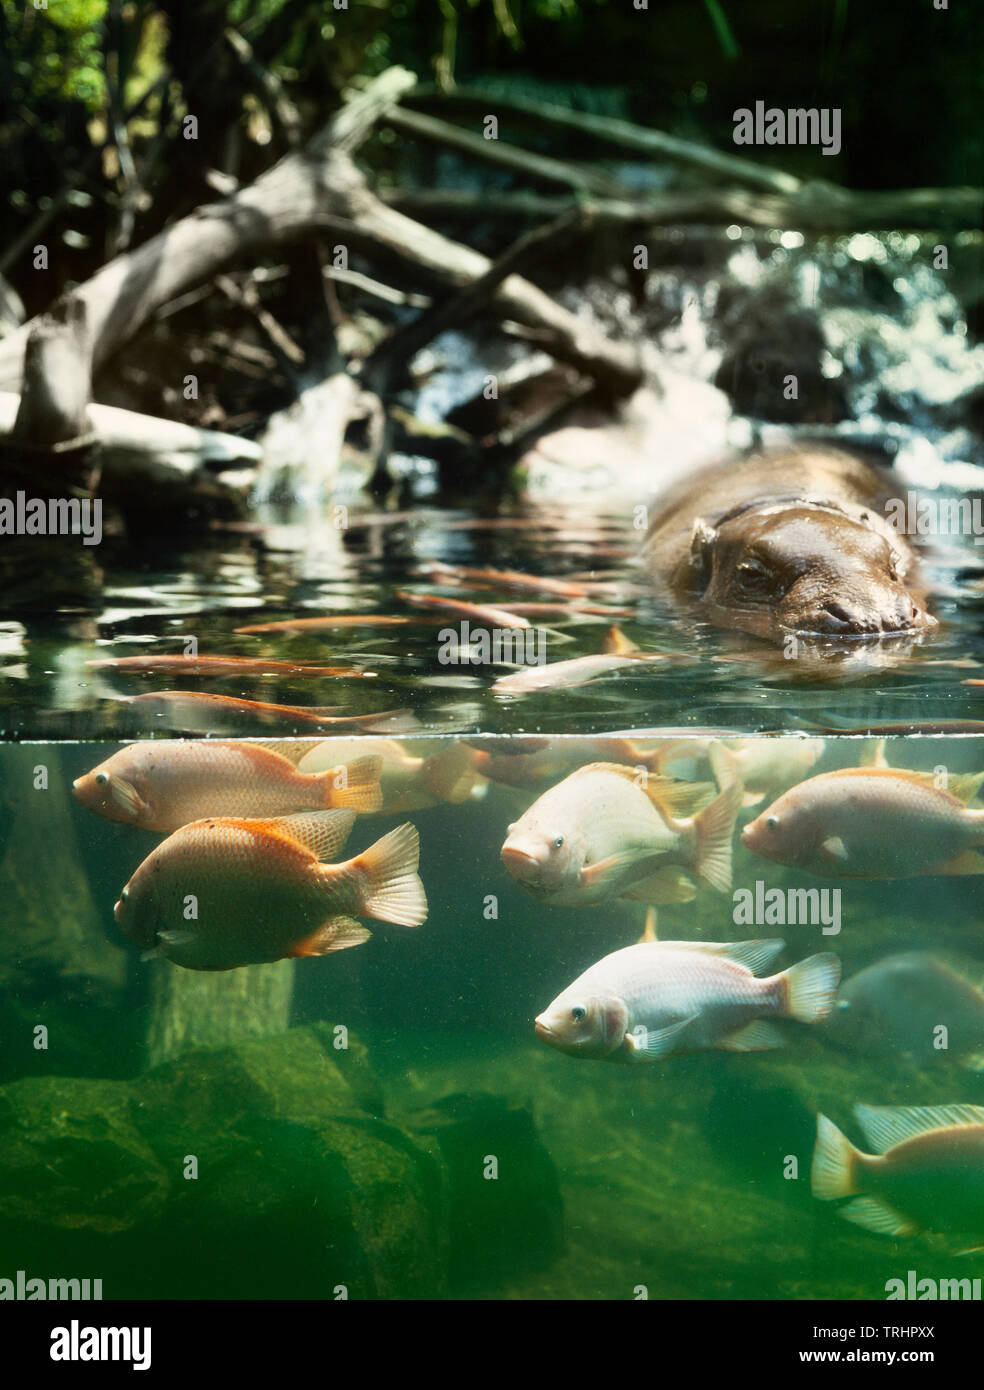 Singapur Zoo, Zwergflusspferd Gehäuse, eine Ausstellung konzipiert 'split' Unterwasser & terrestrische anzeigen zu lassen Stockfoto